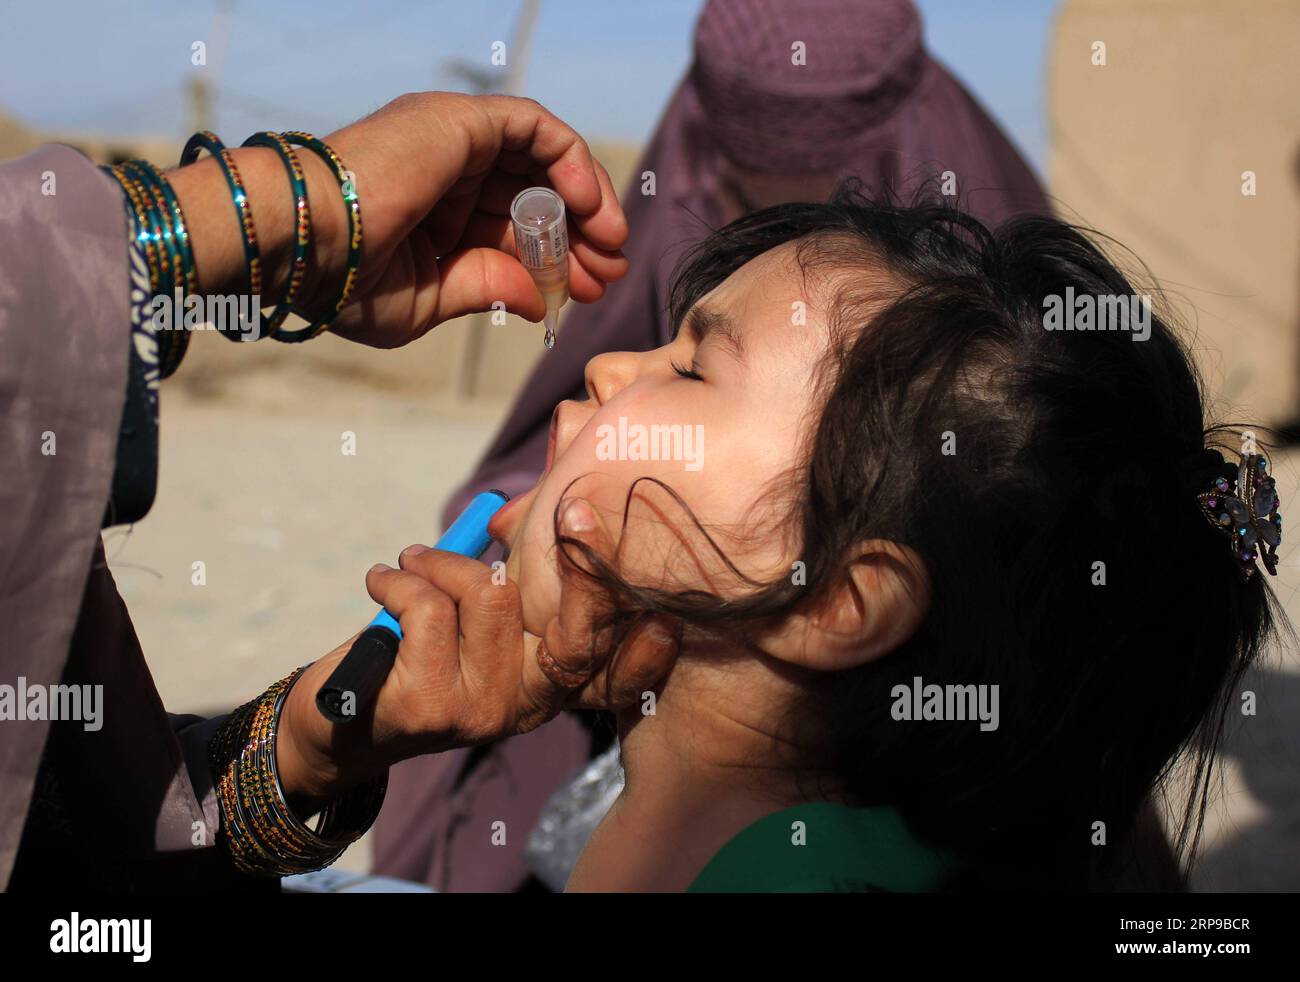 News Themen der Woche KW14 News Bilder des Tages 190401 -- KANDAHAR, 1 aprile 2019 -- Un operatore sanitario dà il vaccino antipolio a un bambino durante una campagna di vaccinazione a Kandahar, Afghanistan meridionale, 1 aprile 2019. Un bambino di due anni è stato riferito di essere stato colpito da poliovirus nonostante abbia ricevuto la vaccinazione anti-polio nella provincia meridionale di Uruzgan in Afghanistan, un funzionario locale ha detto lunedì. L'insurrezione e i conflitti in corso hanno ostacolato gli sforzi per eliminare la malattia infettiva nel paese montano. AFGHANISTAN-KANDAHAR-POLIO CAMPAGNA SanaullahxSeaim PUBLICATIONx Foto Stock